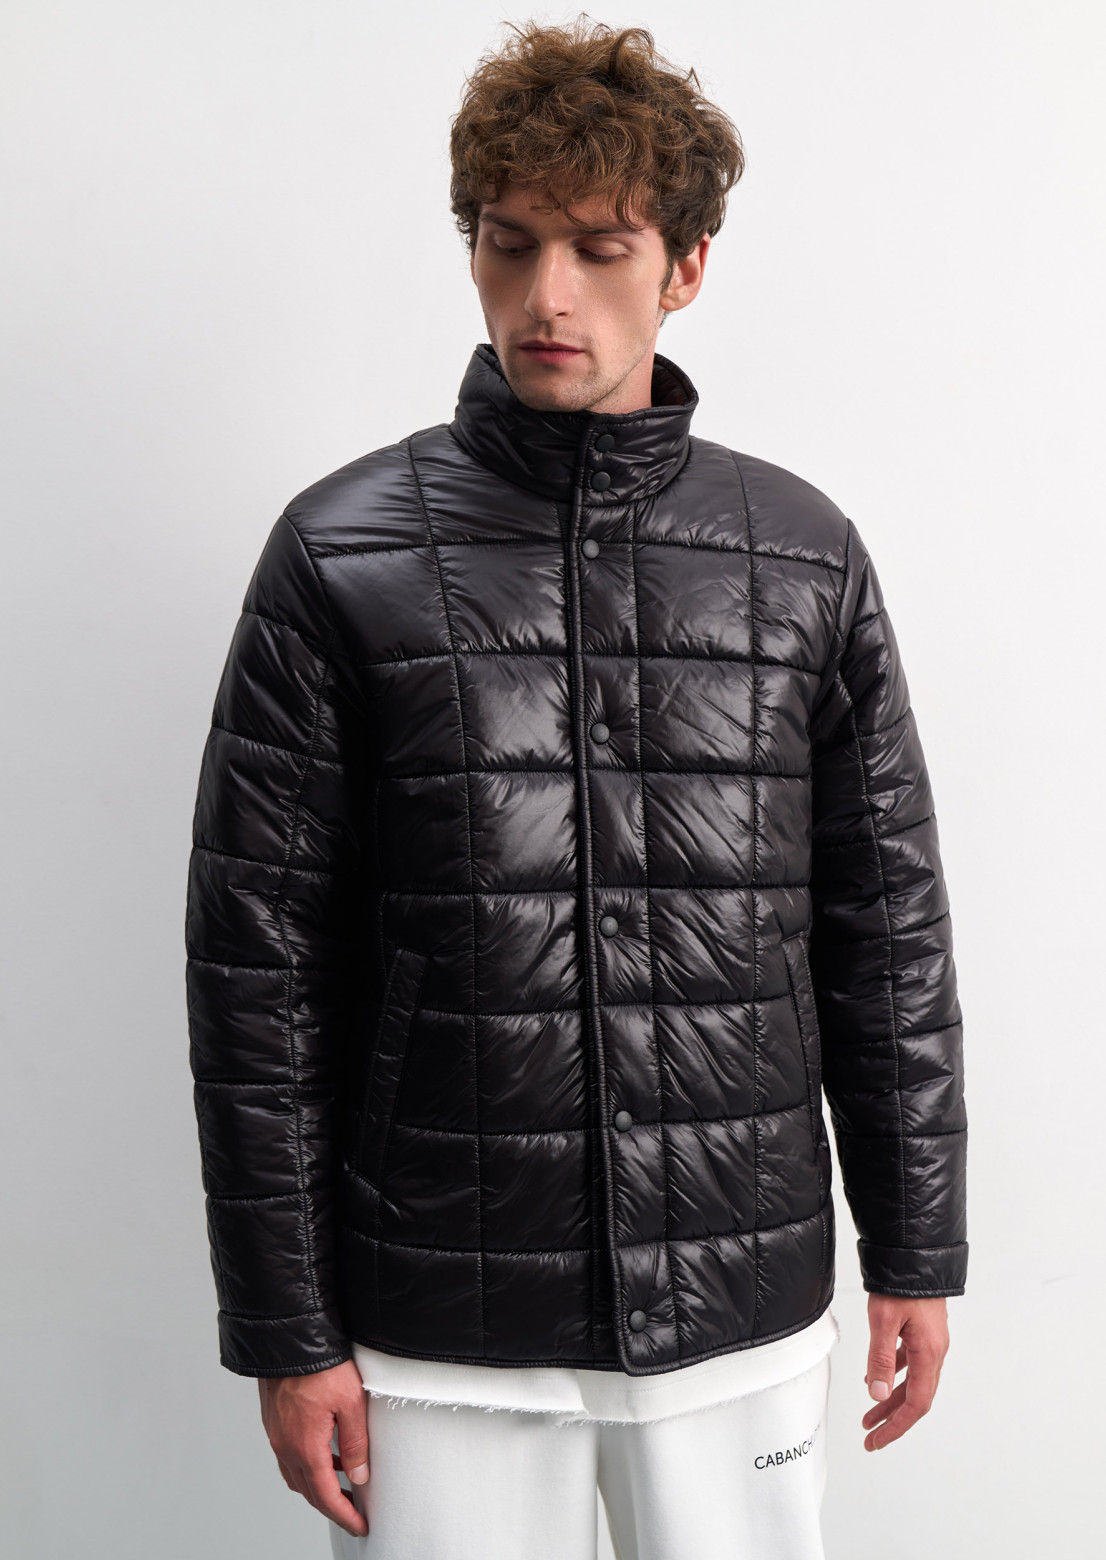 Men's black color quilted glitter jacket